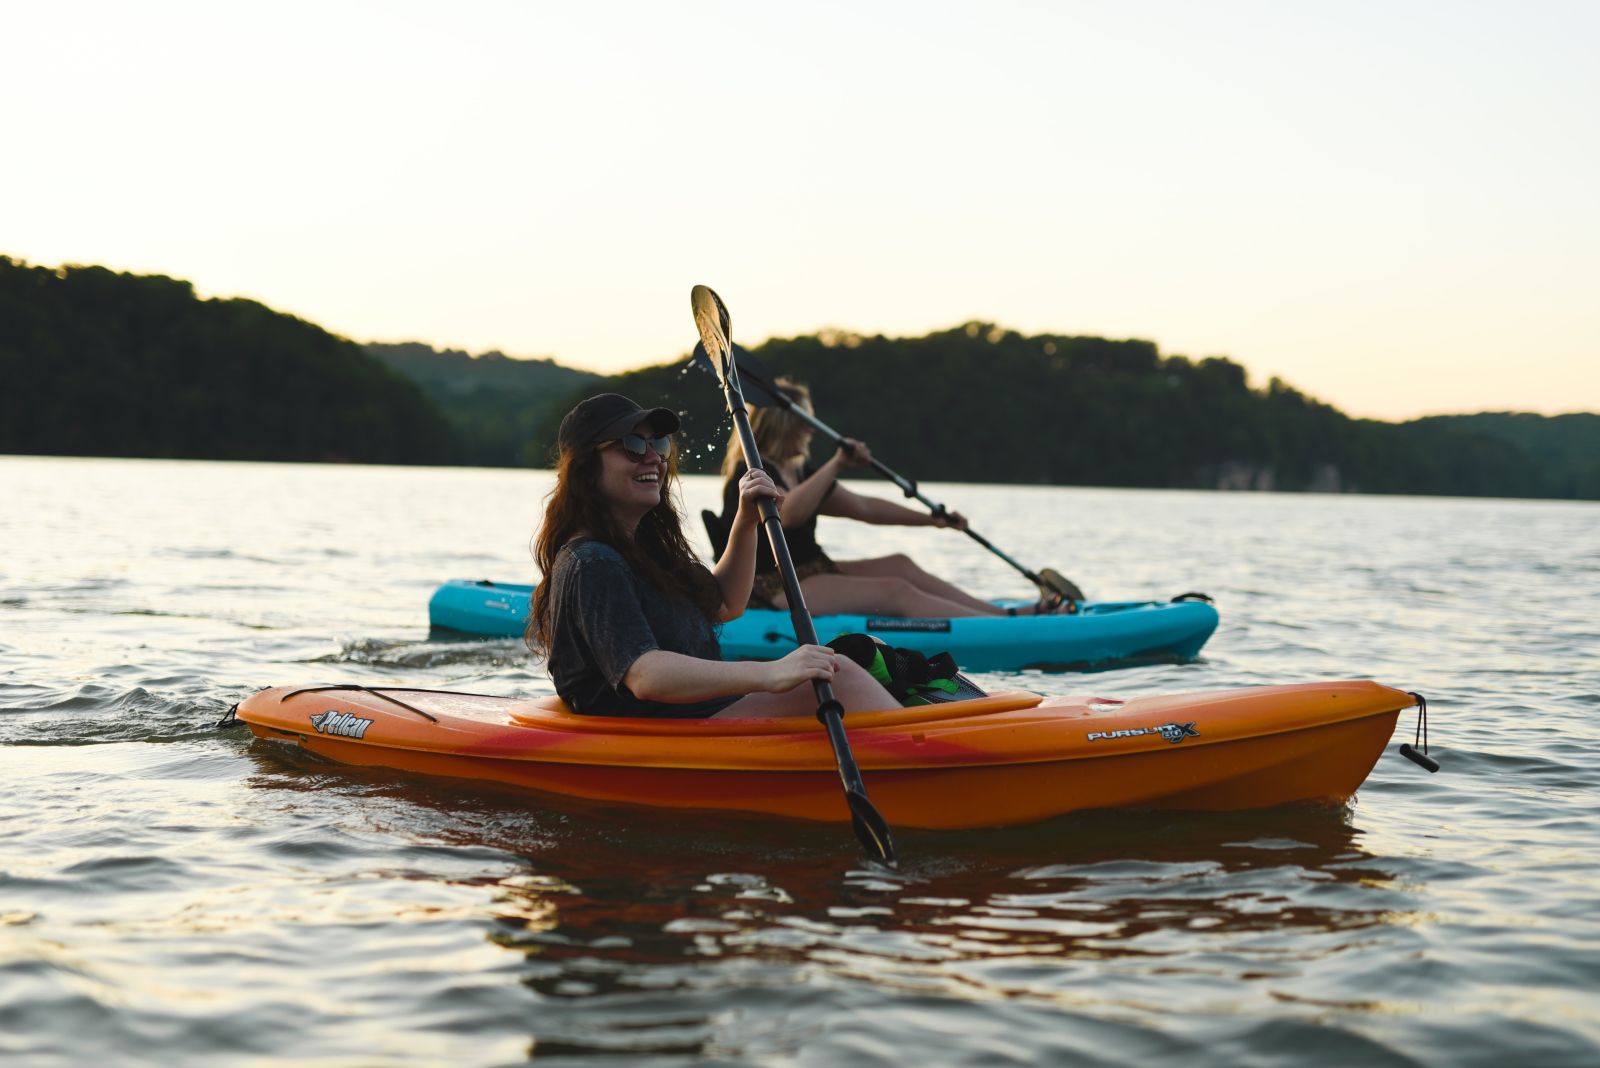 Christian Bowen image of 2 women kayaking.